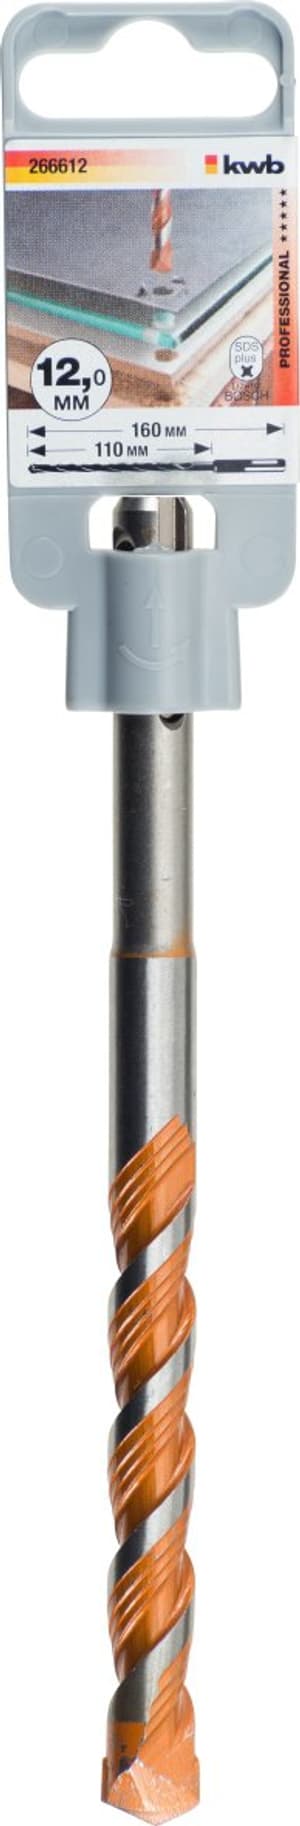 EASY CUT Allzweck-Hammerbohrer mit SDS-Plus Schaft, ø 12 mm